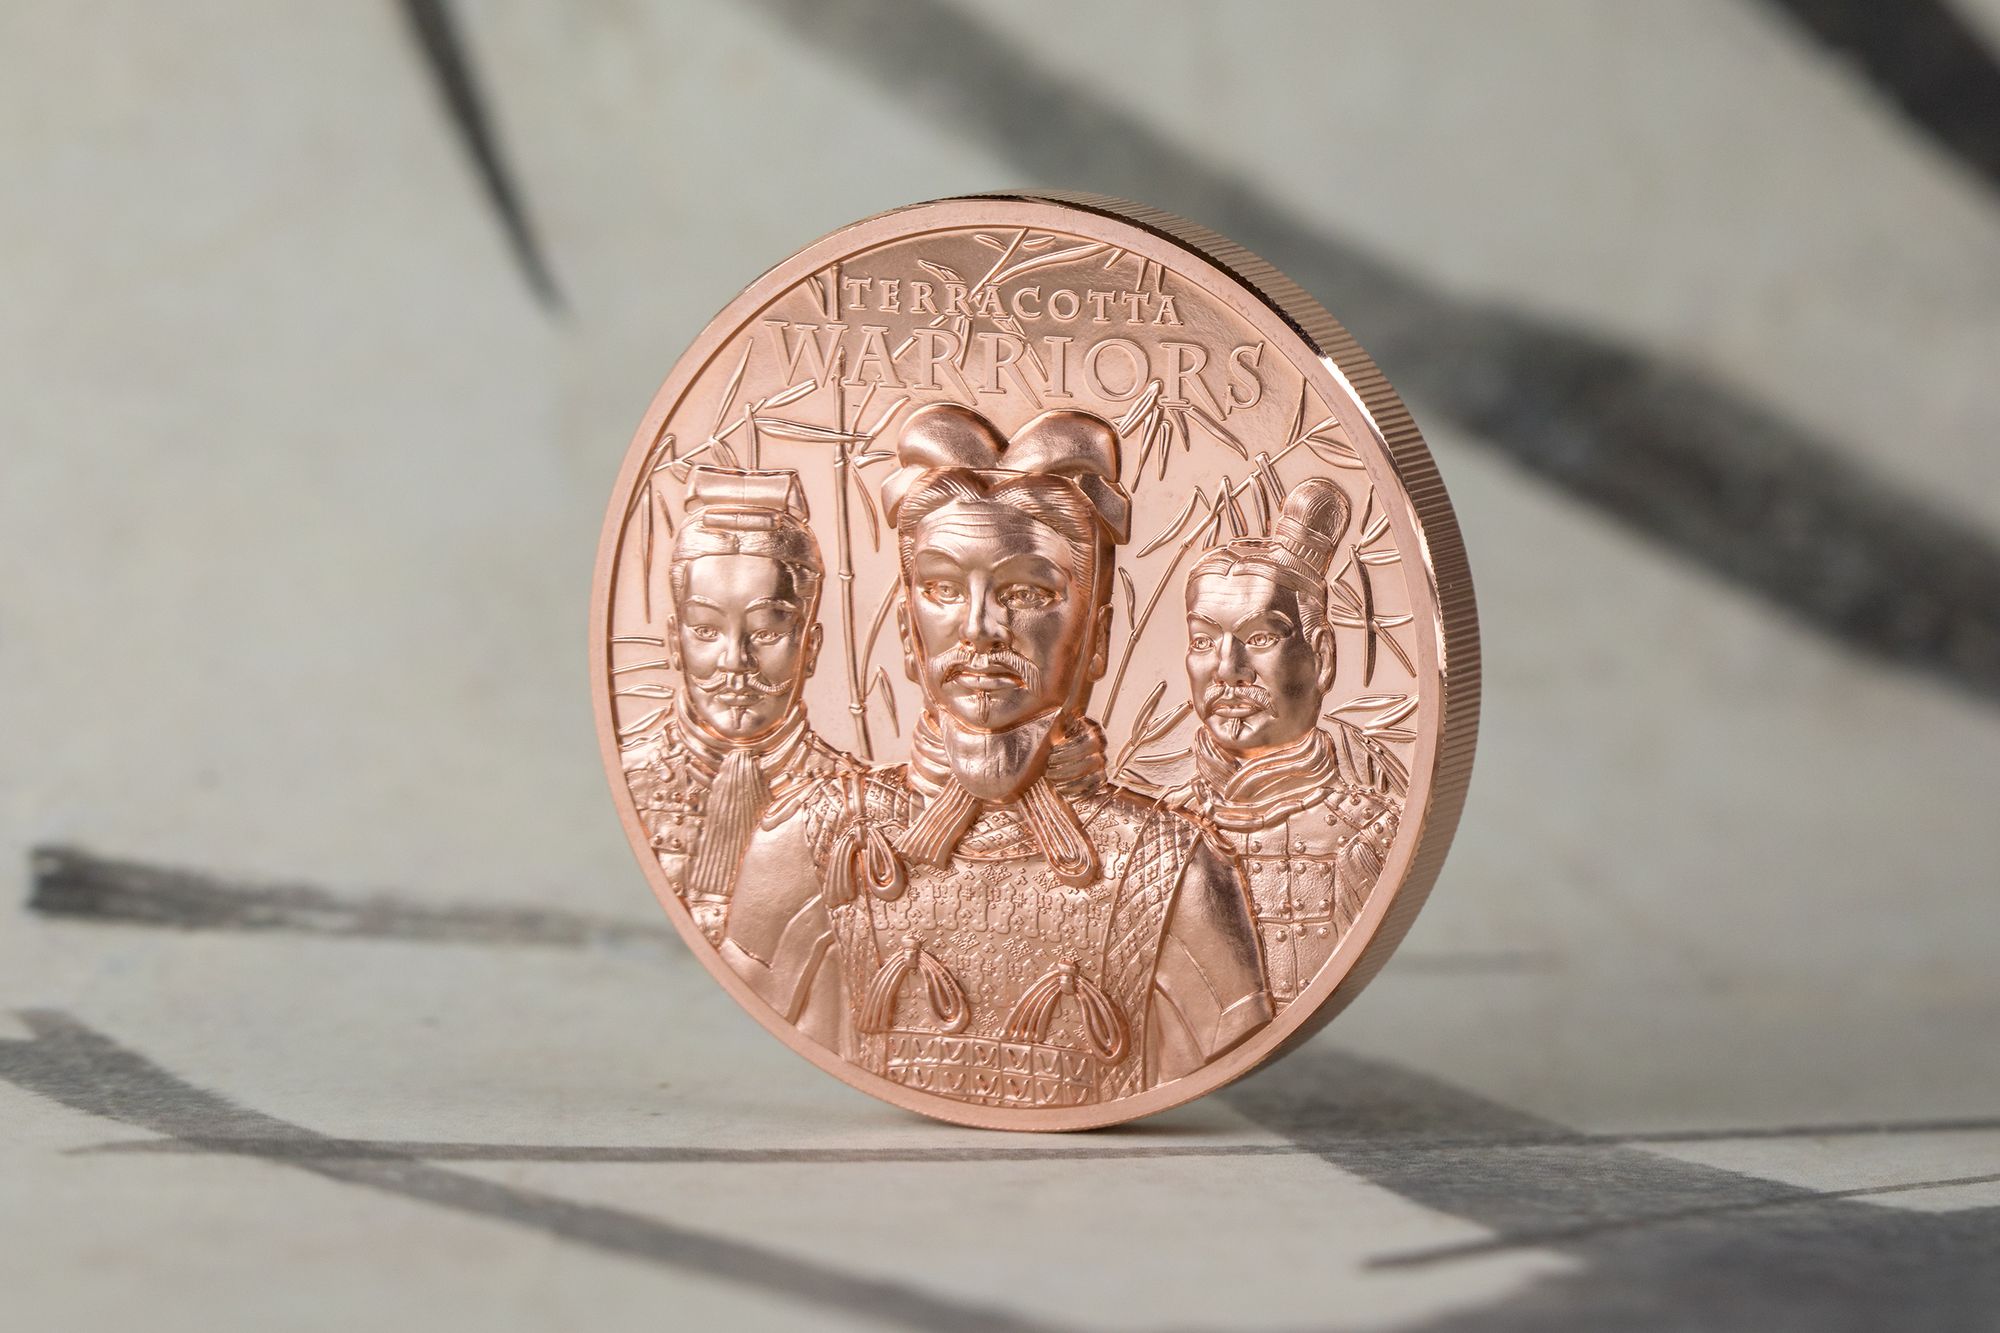 2021 Terracotta Warriors 50g Copper Coin